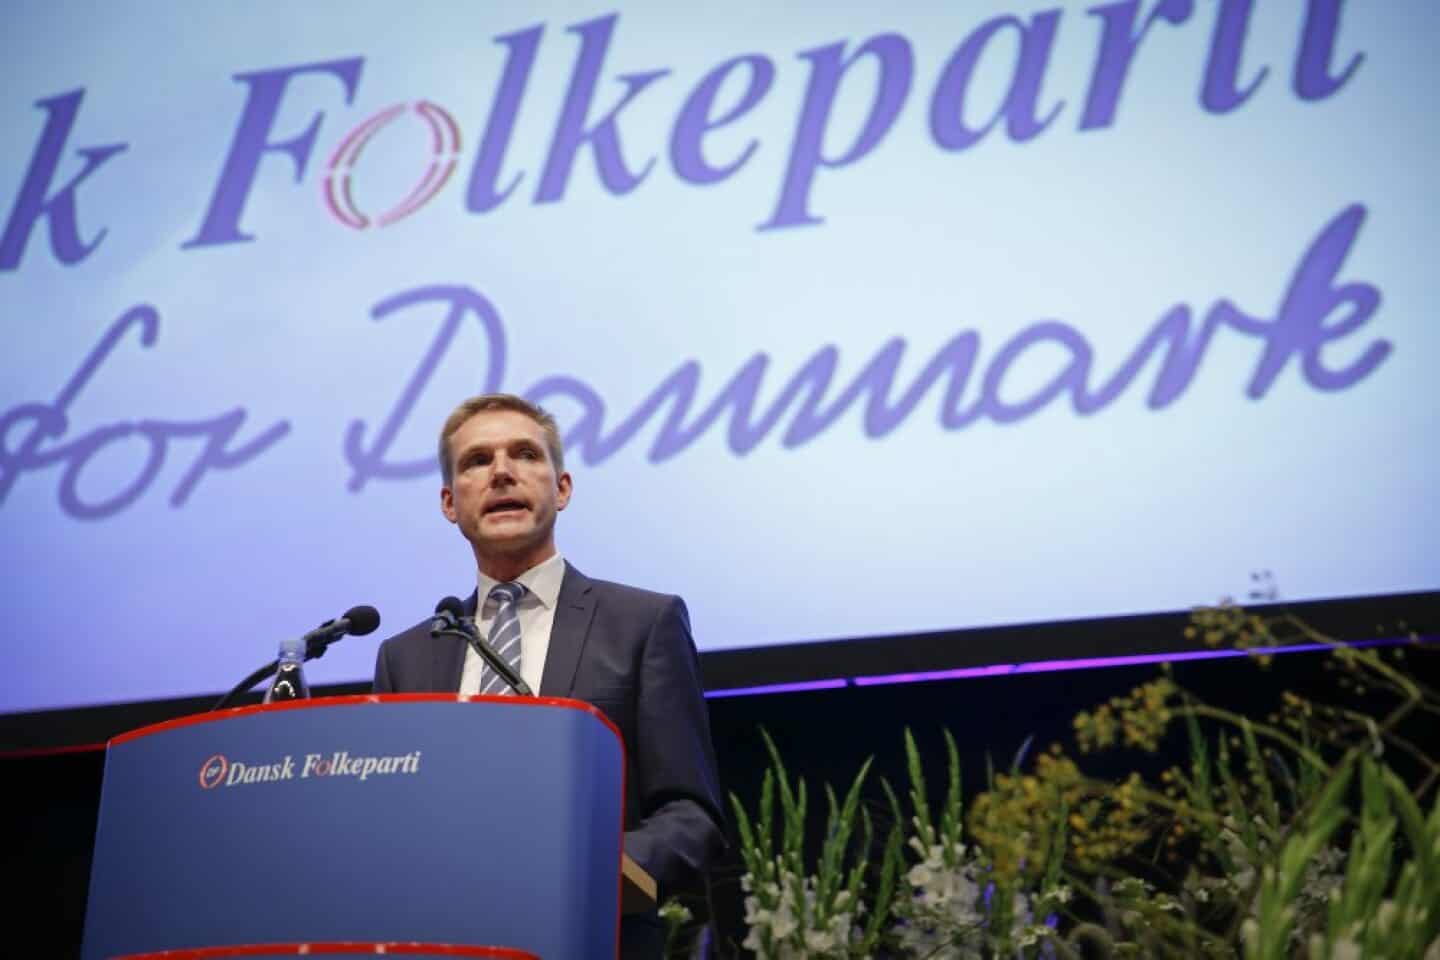 Kontroversiel går fri efter tale om folketidende.dk